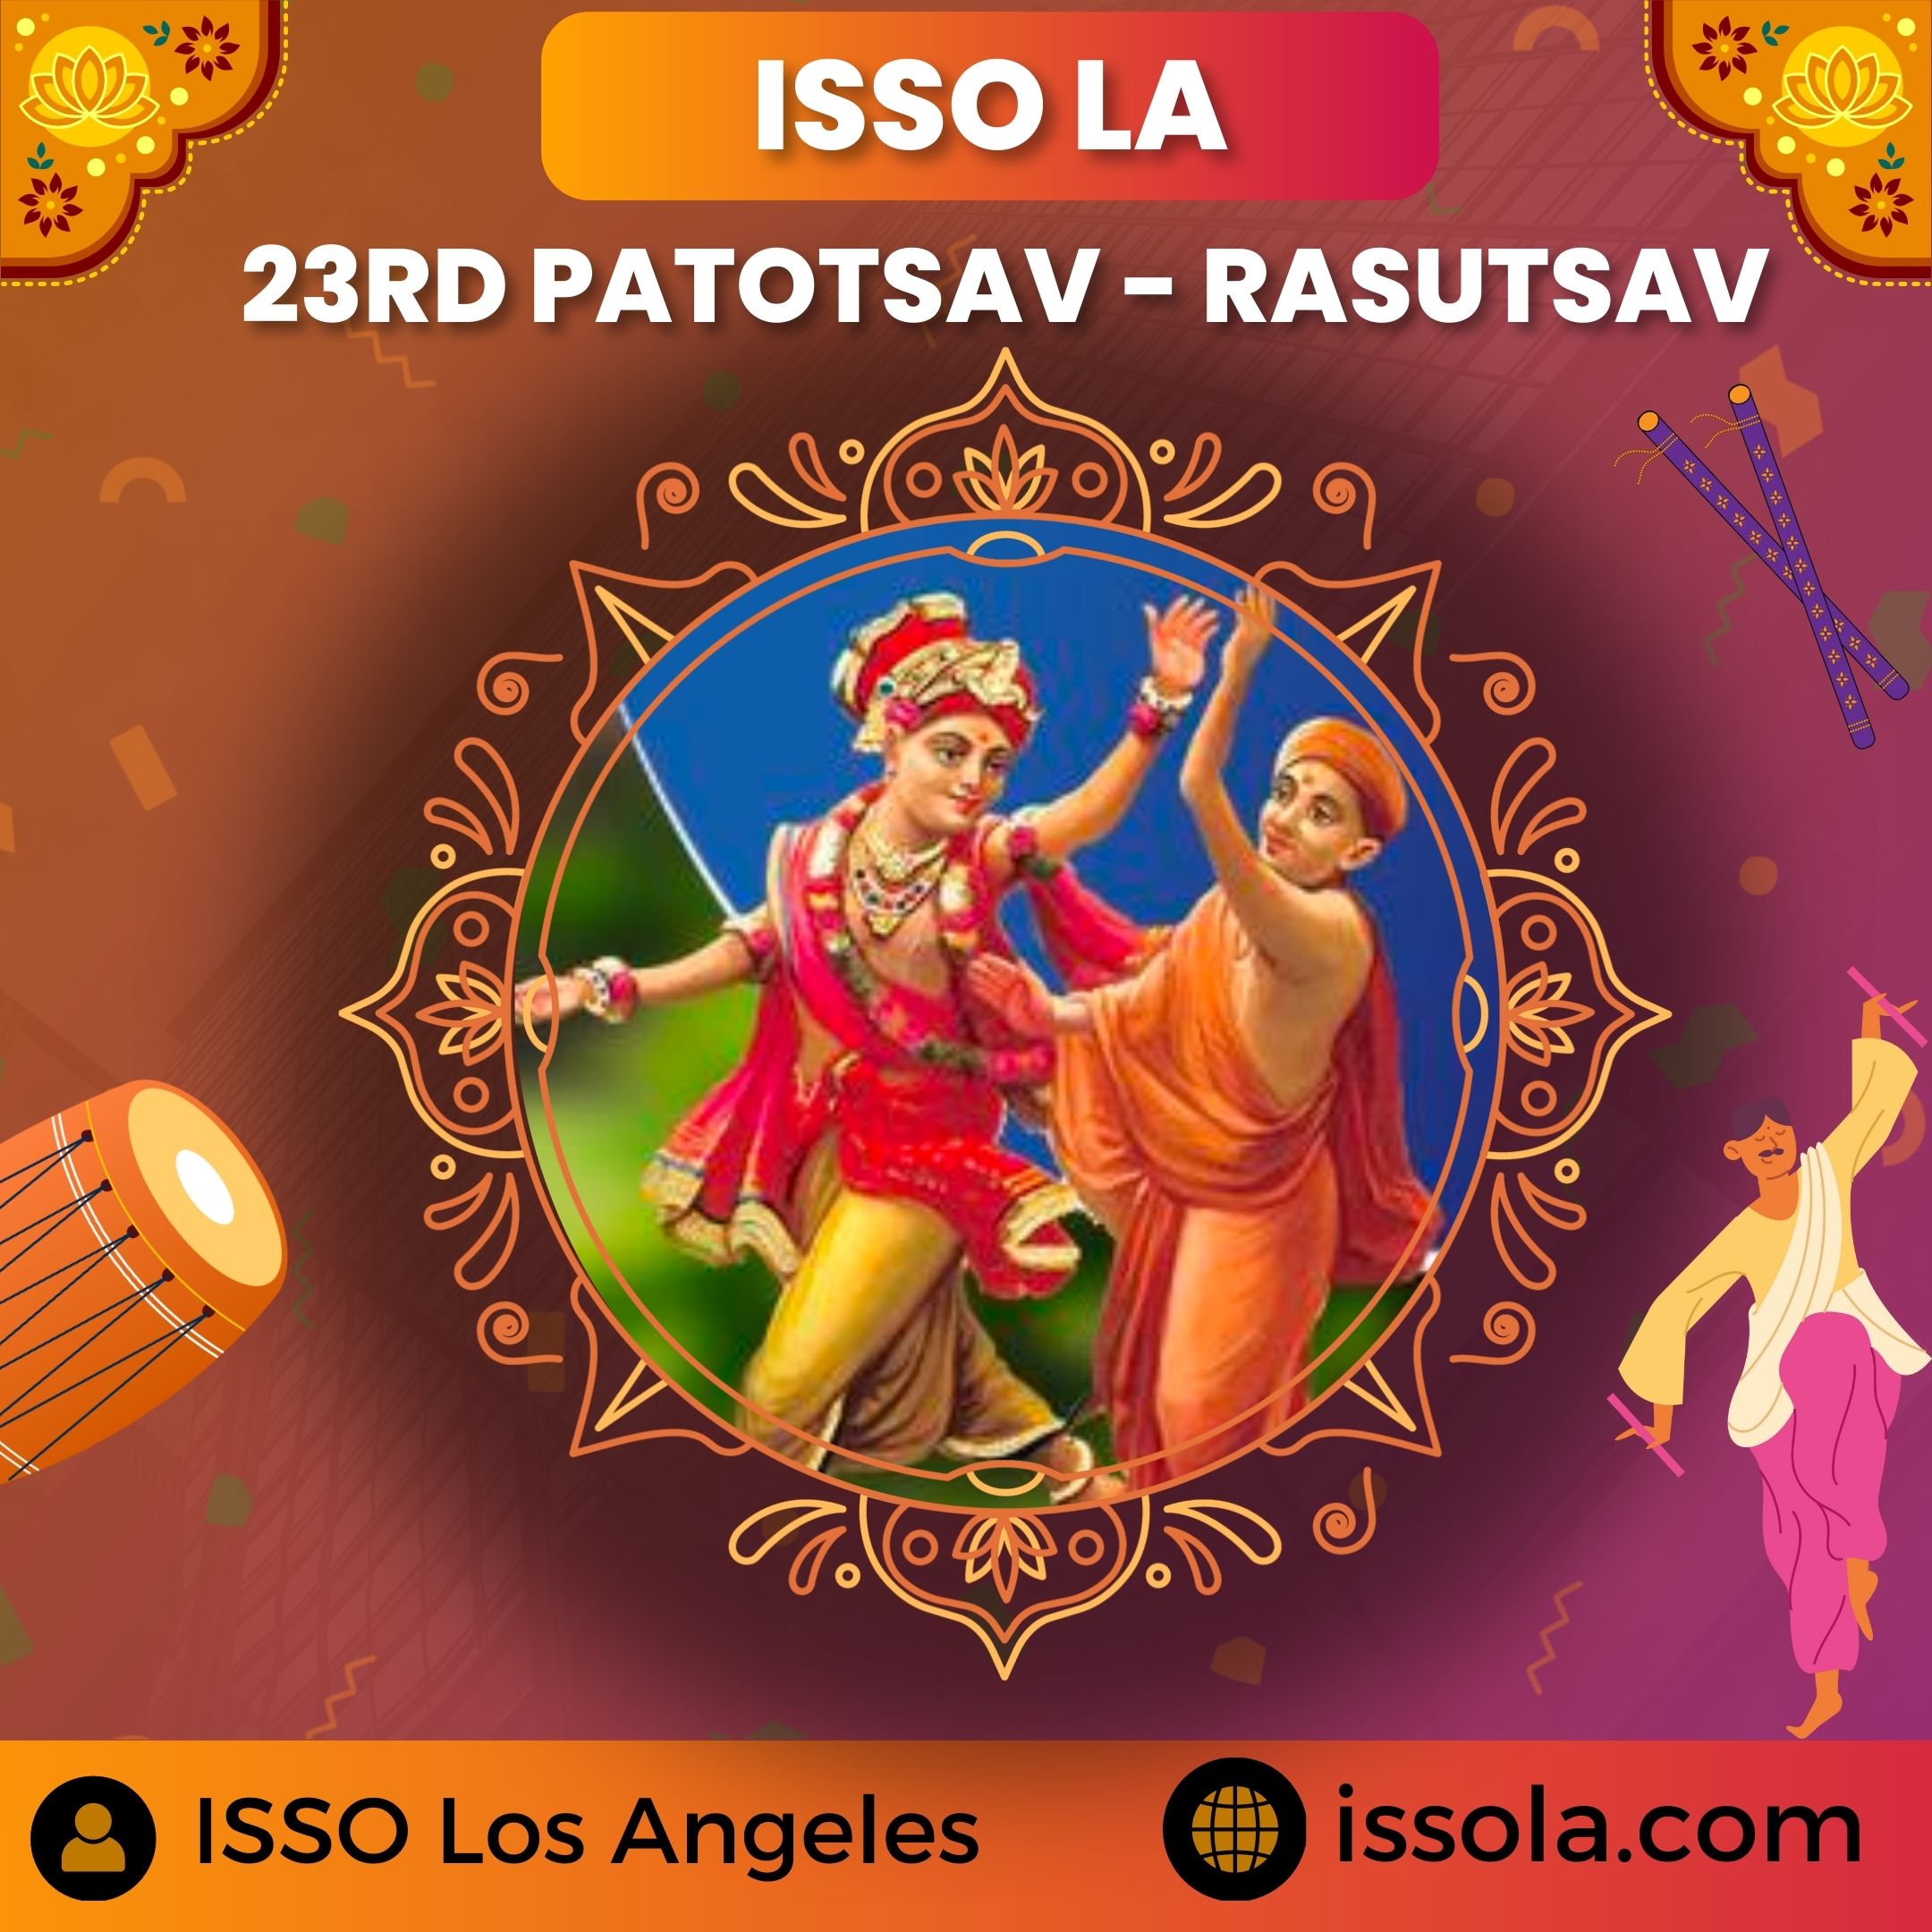 23rd Patotsav Day 2 Rasutsav - ISSO Swaminarayan Temple, Norwalk, Los Angeles, www.issola.com